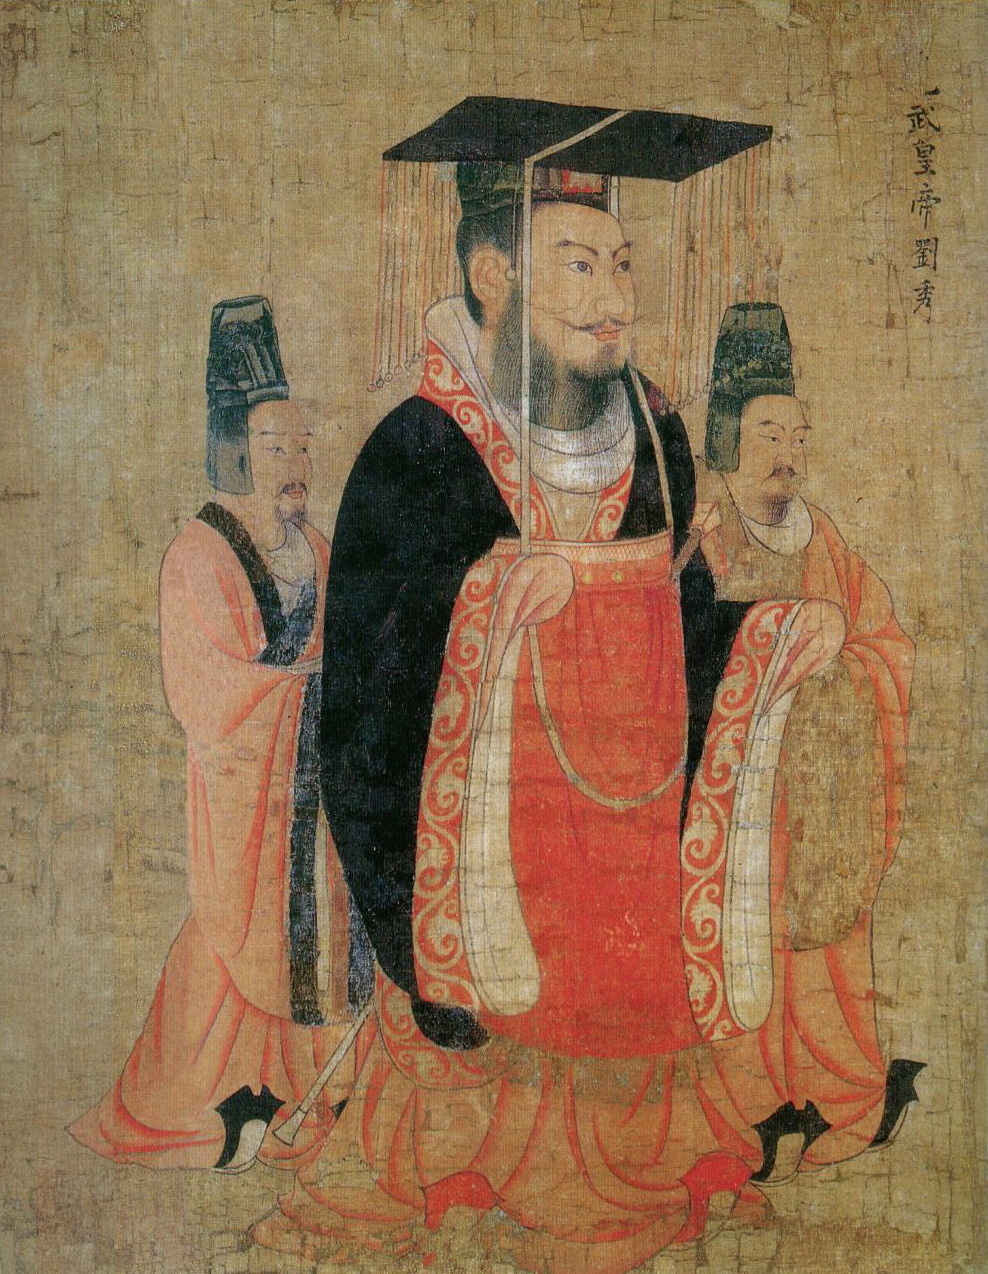 Liu Xiu, Emperor Guangwu of Han